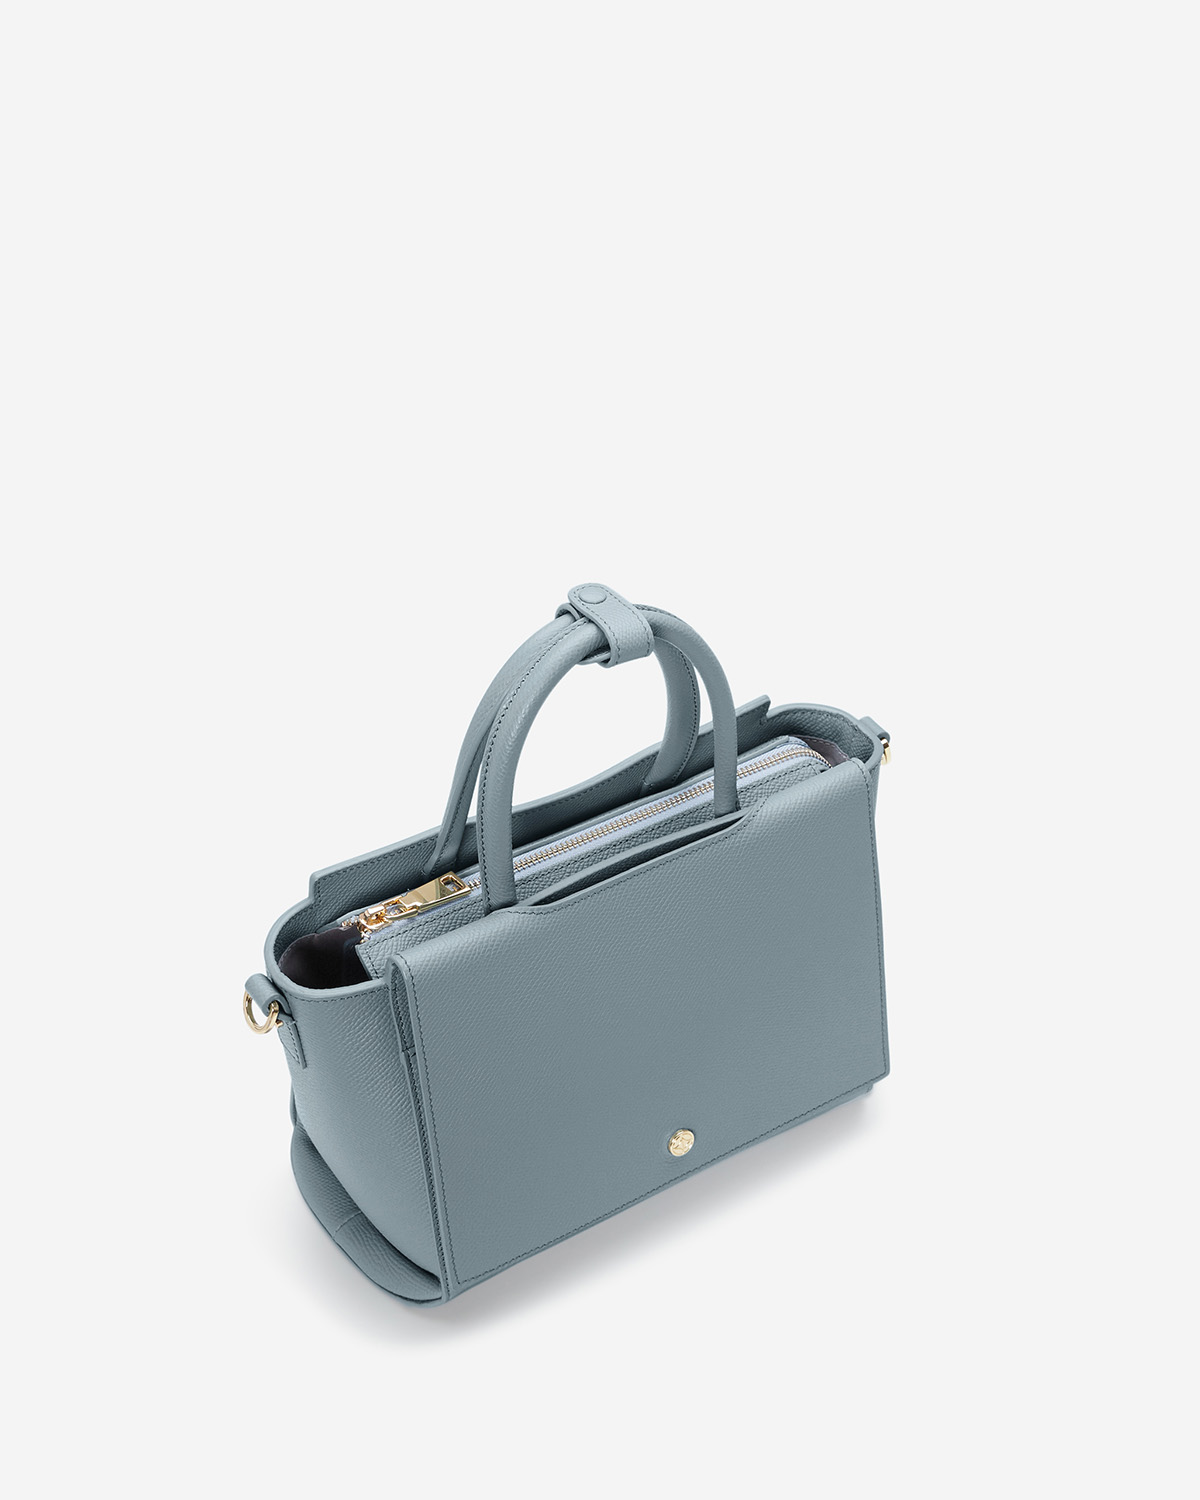 กระเป๋าถือหนังแท้ VERA Heidi Leather Handbag, ไซส์ 28 สี Cloud